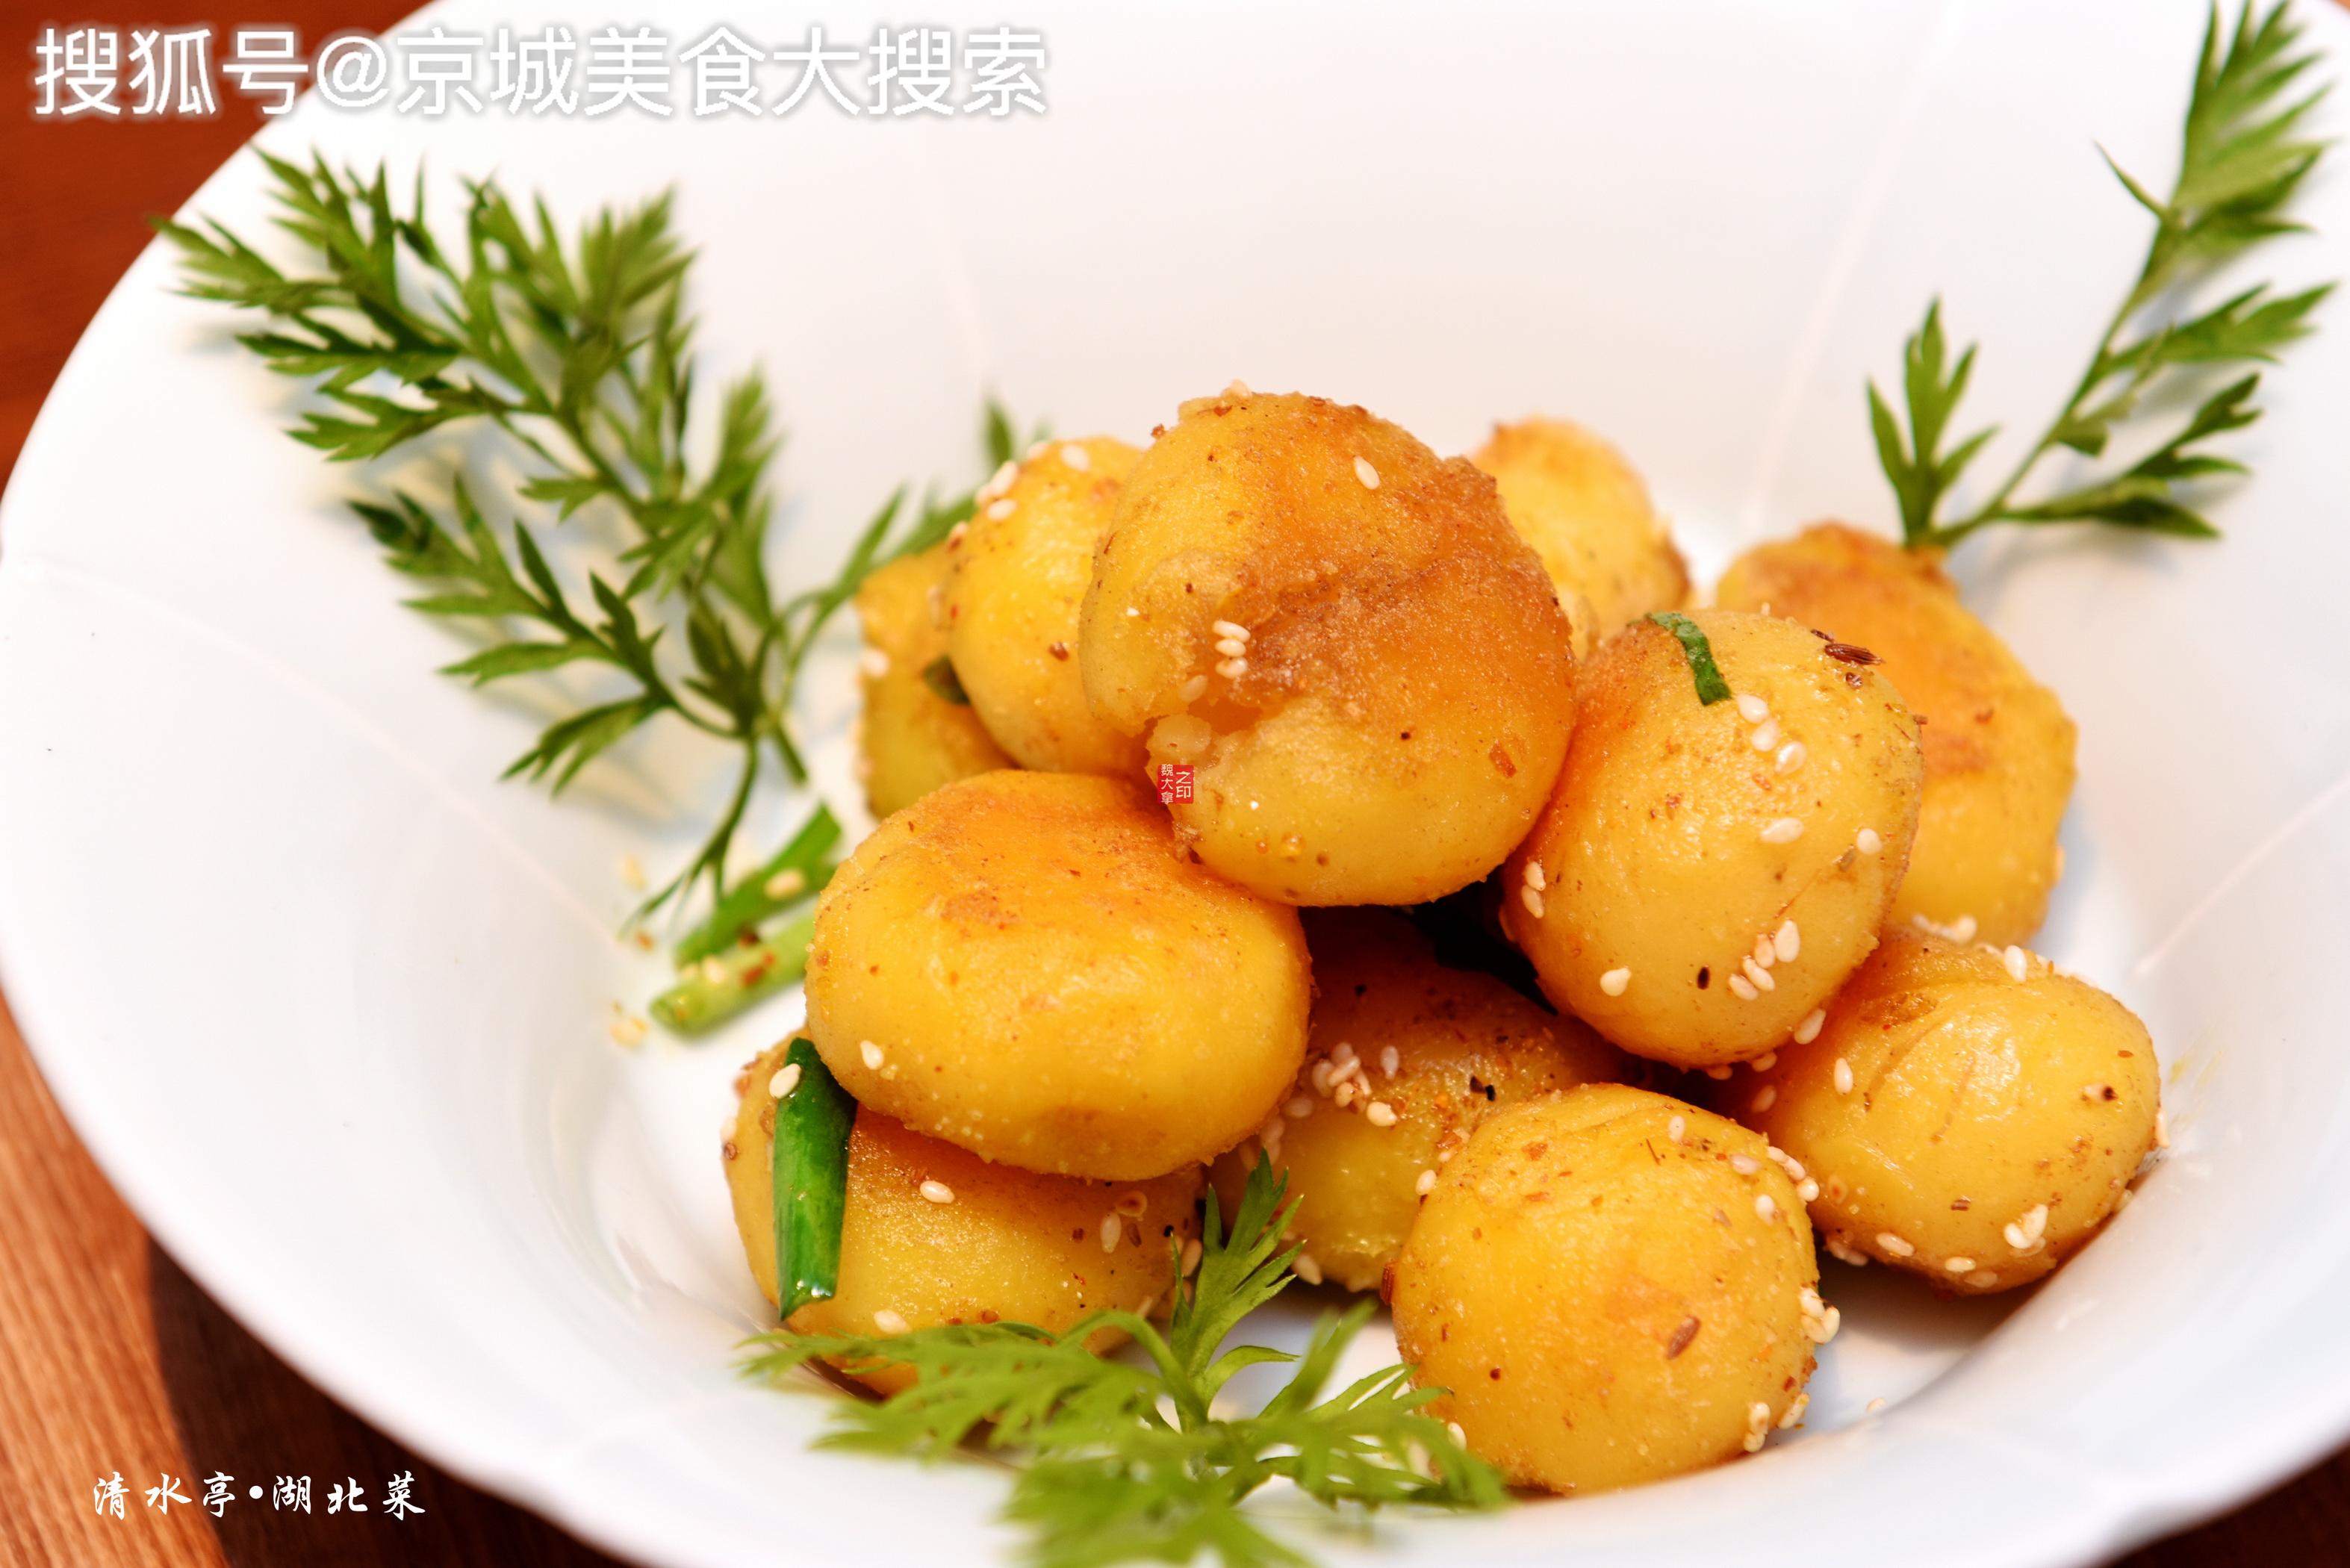 恩施炕土豆仔被评为国家地理标志产品的恩施土豆,只有乒乓球大小,皮薄